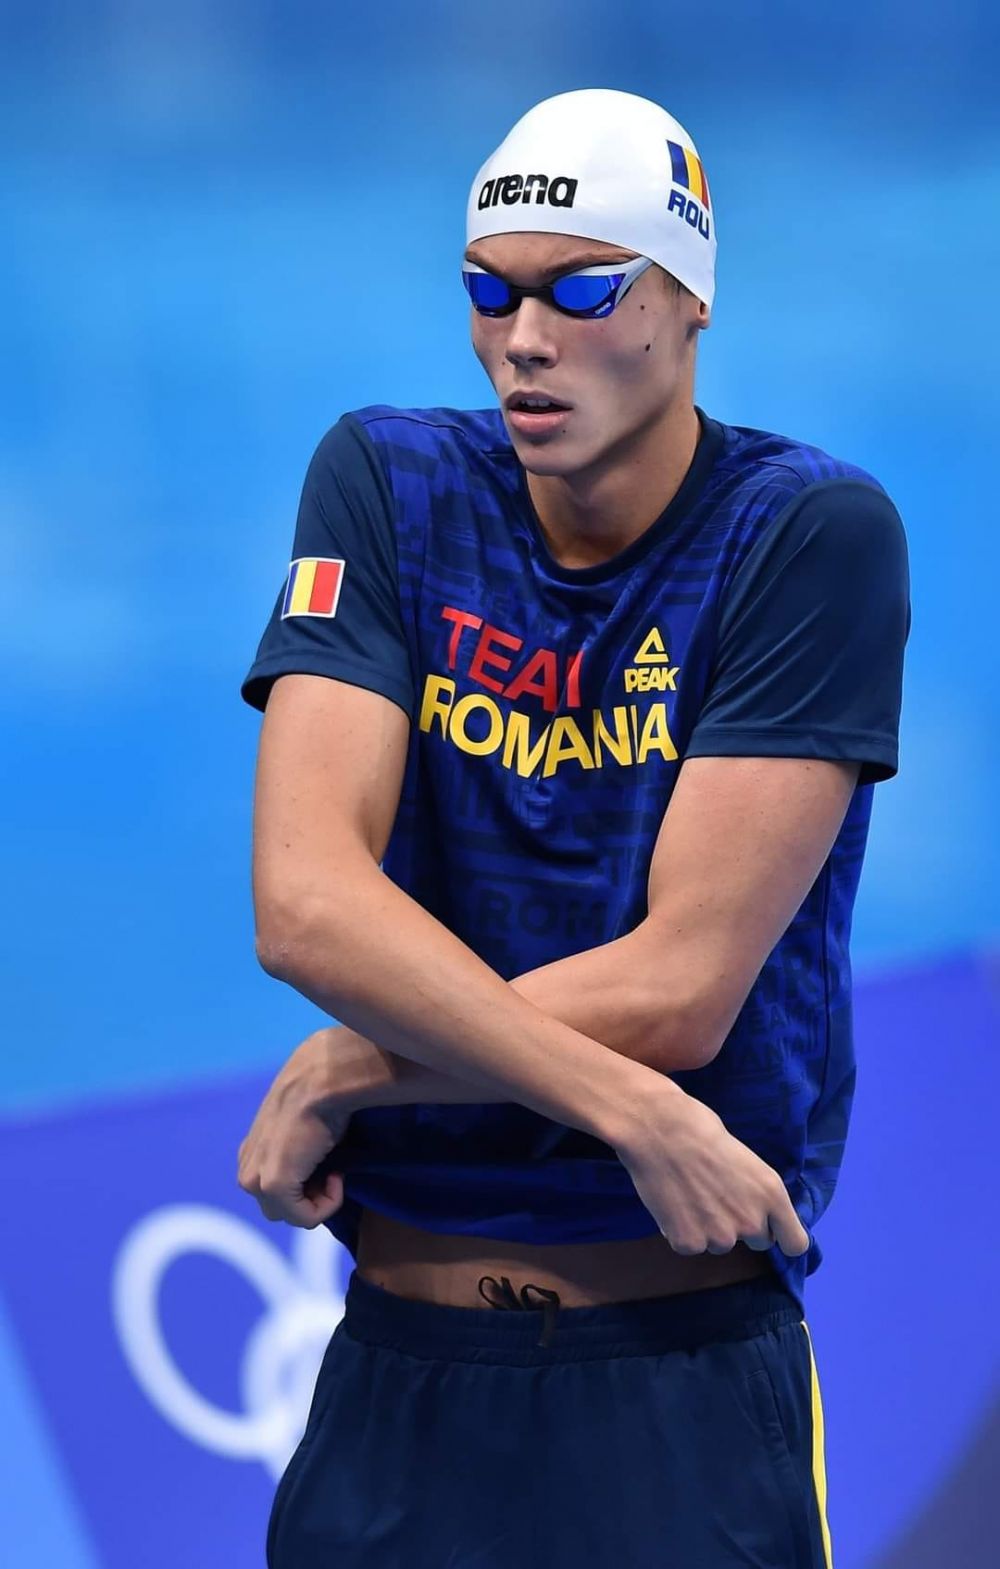 Programul lui David Popovici la Campionatul Național de înot în bazin scurt. În ce probe ia startul recordmenul mondial_22